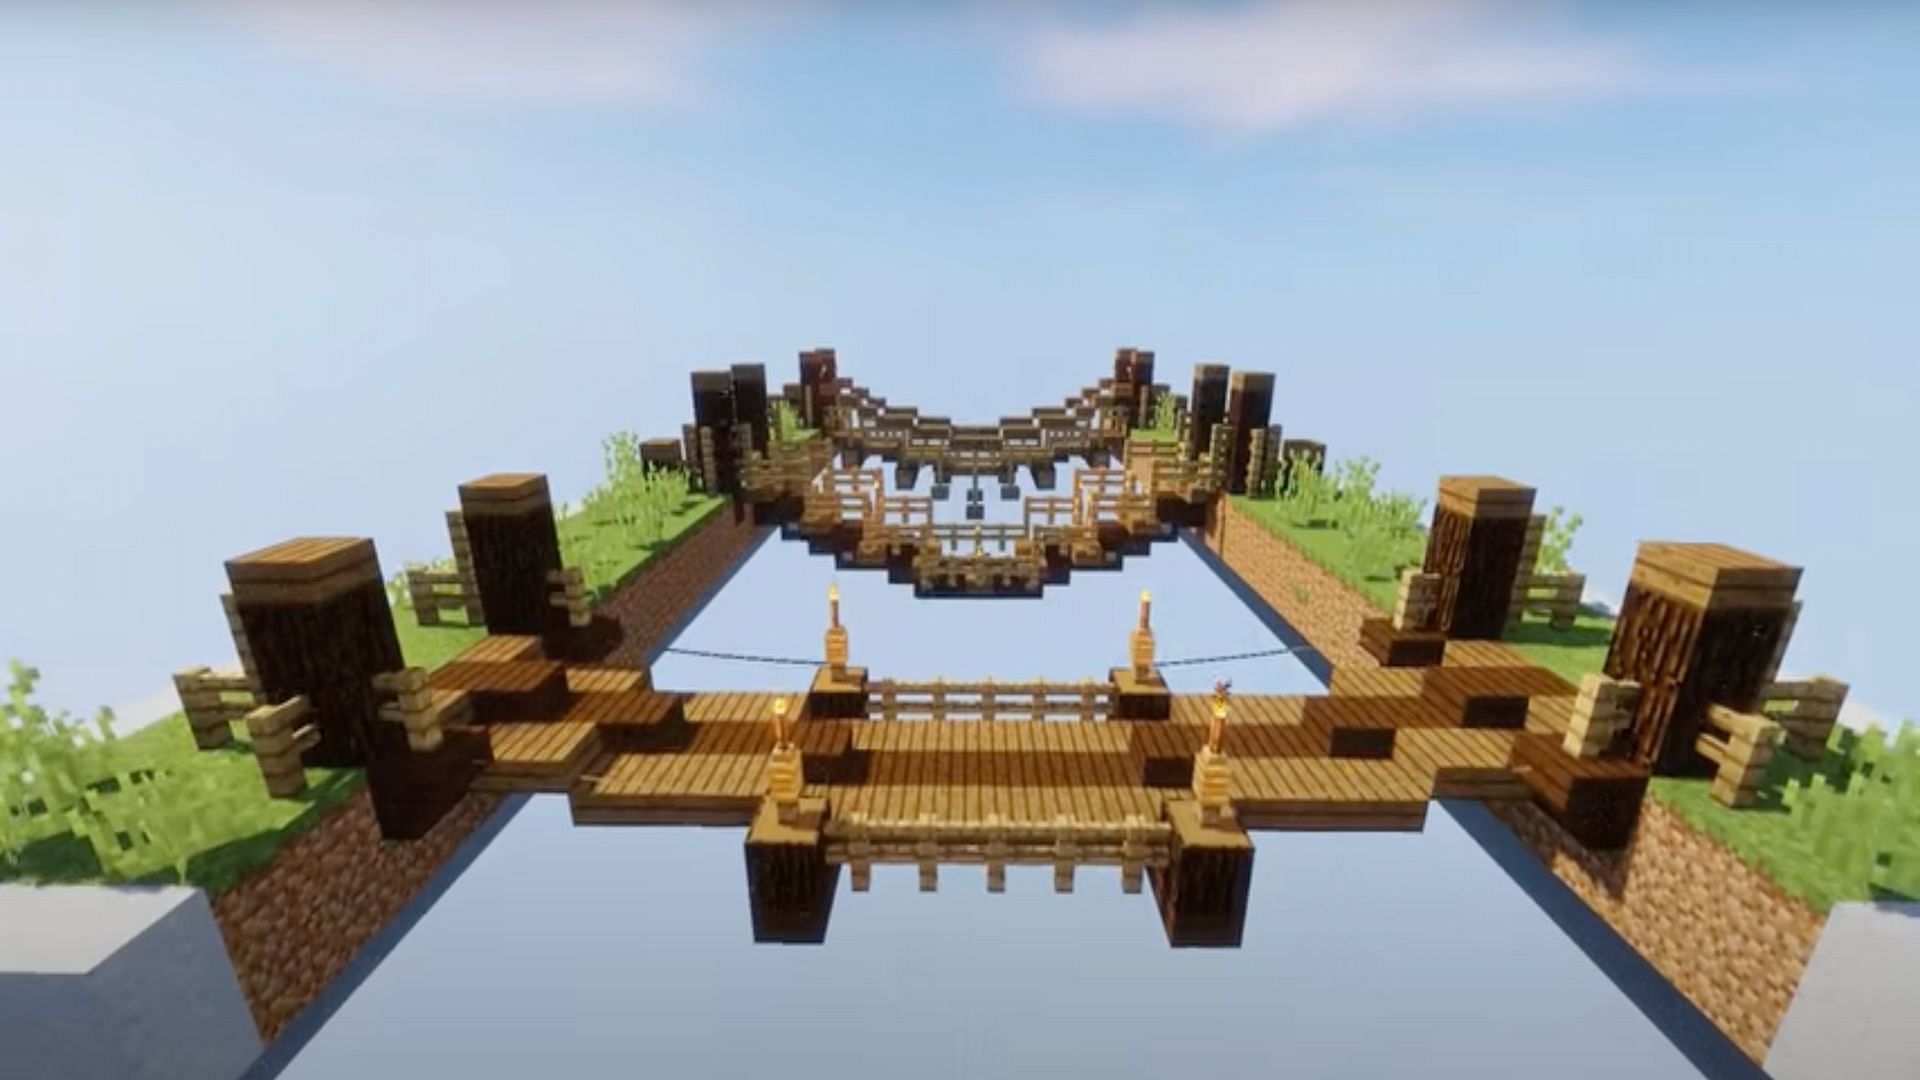 Les ponts de corde sont un concept simple, mais peuvent être exécutés de différentes manières pour un look unique (Image via JayLythical/YouTube)